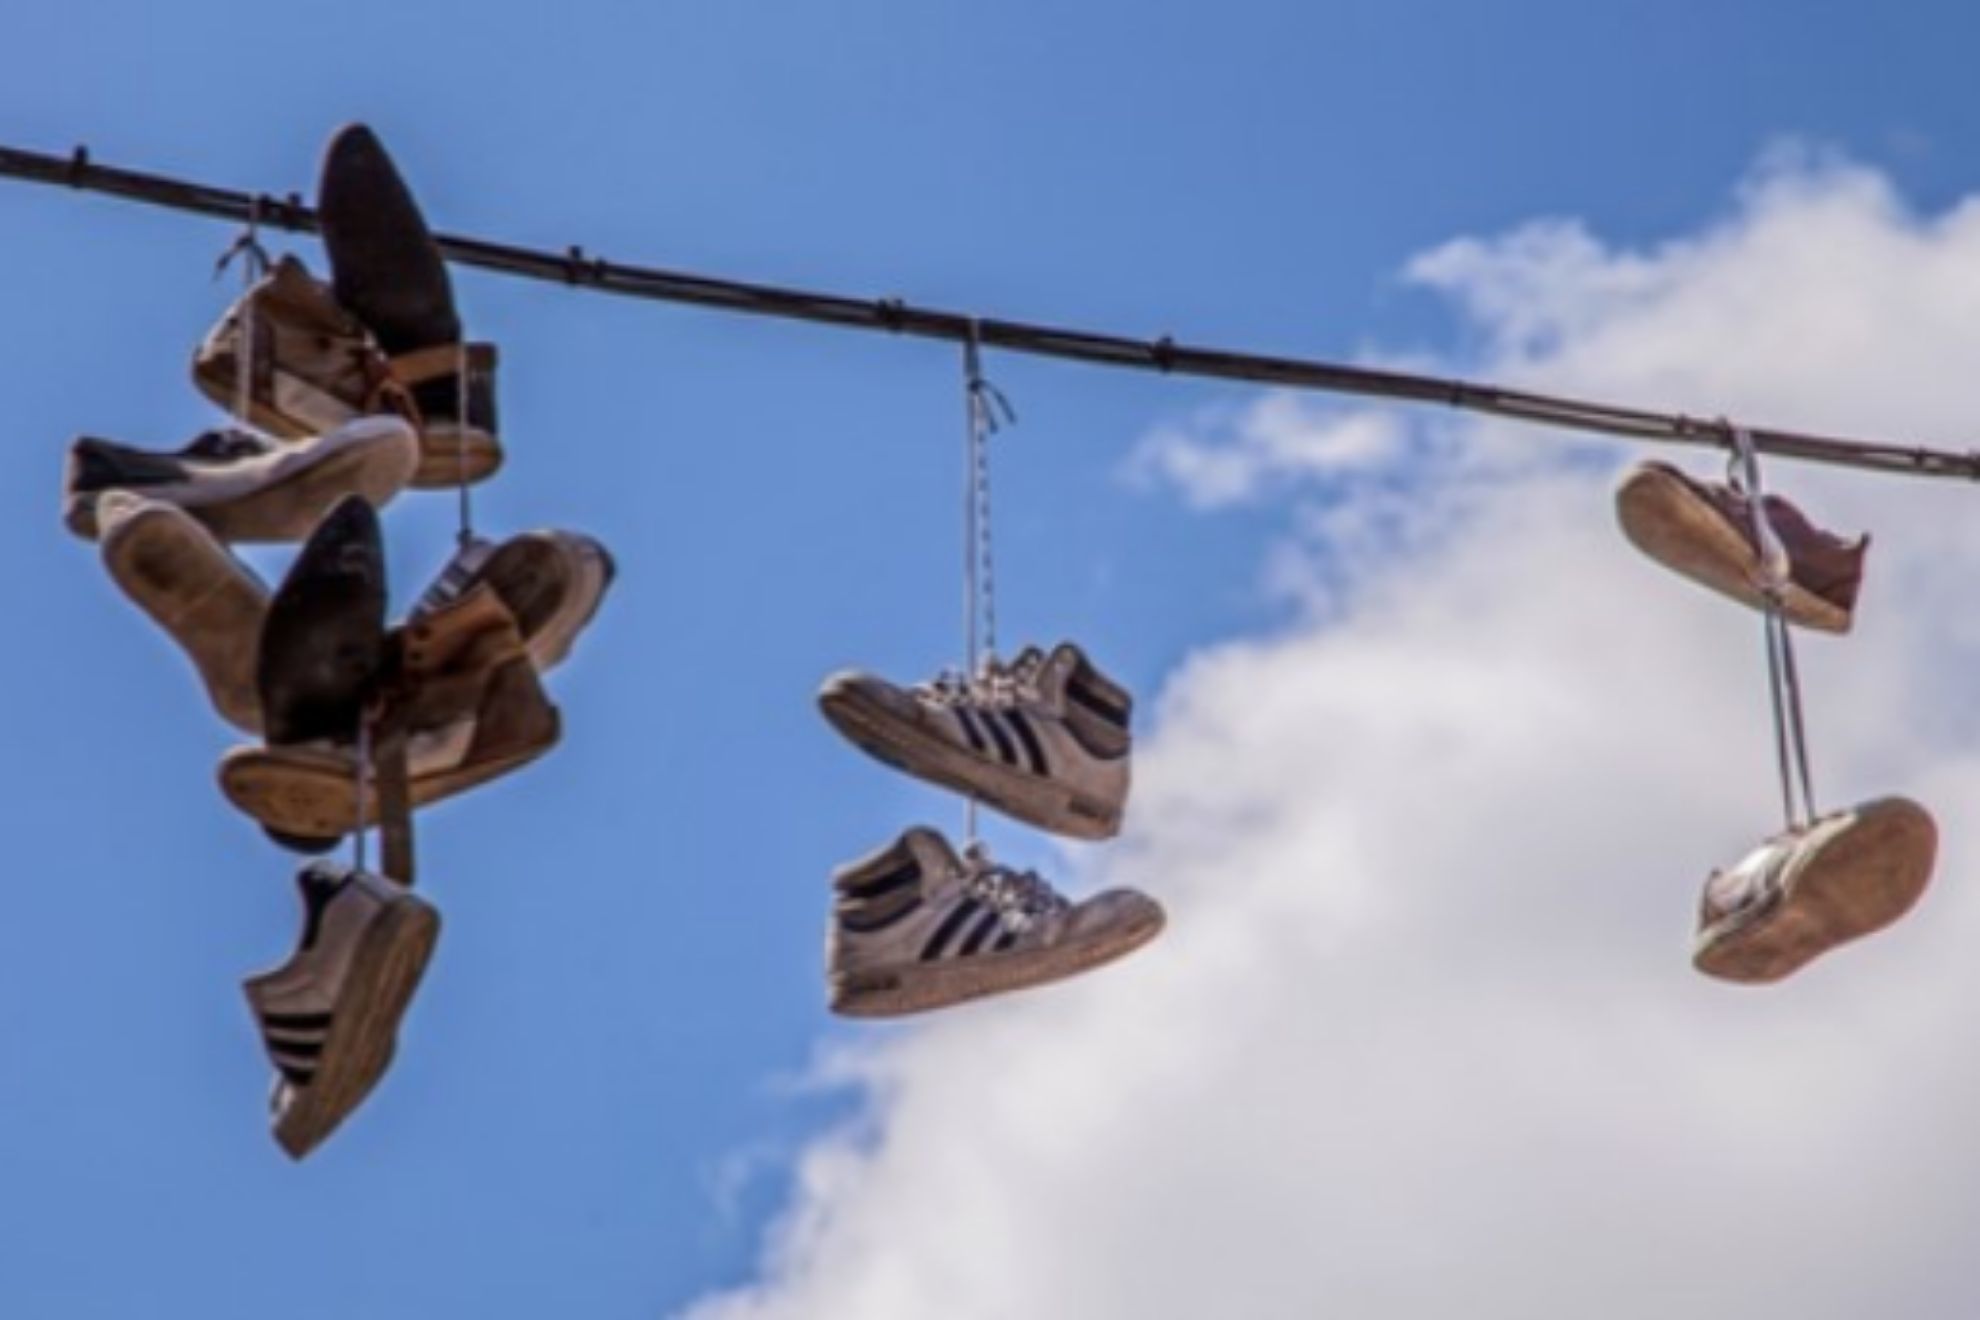 Por qu cuelgan zapatos en los cables: La verdad detrs de esta extraa costumbre urbana